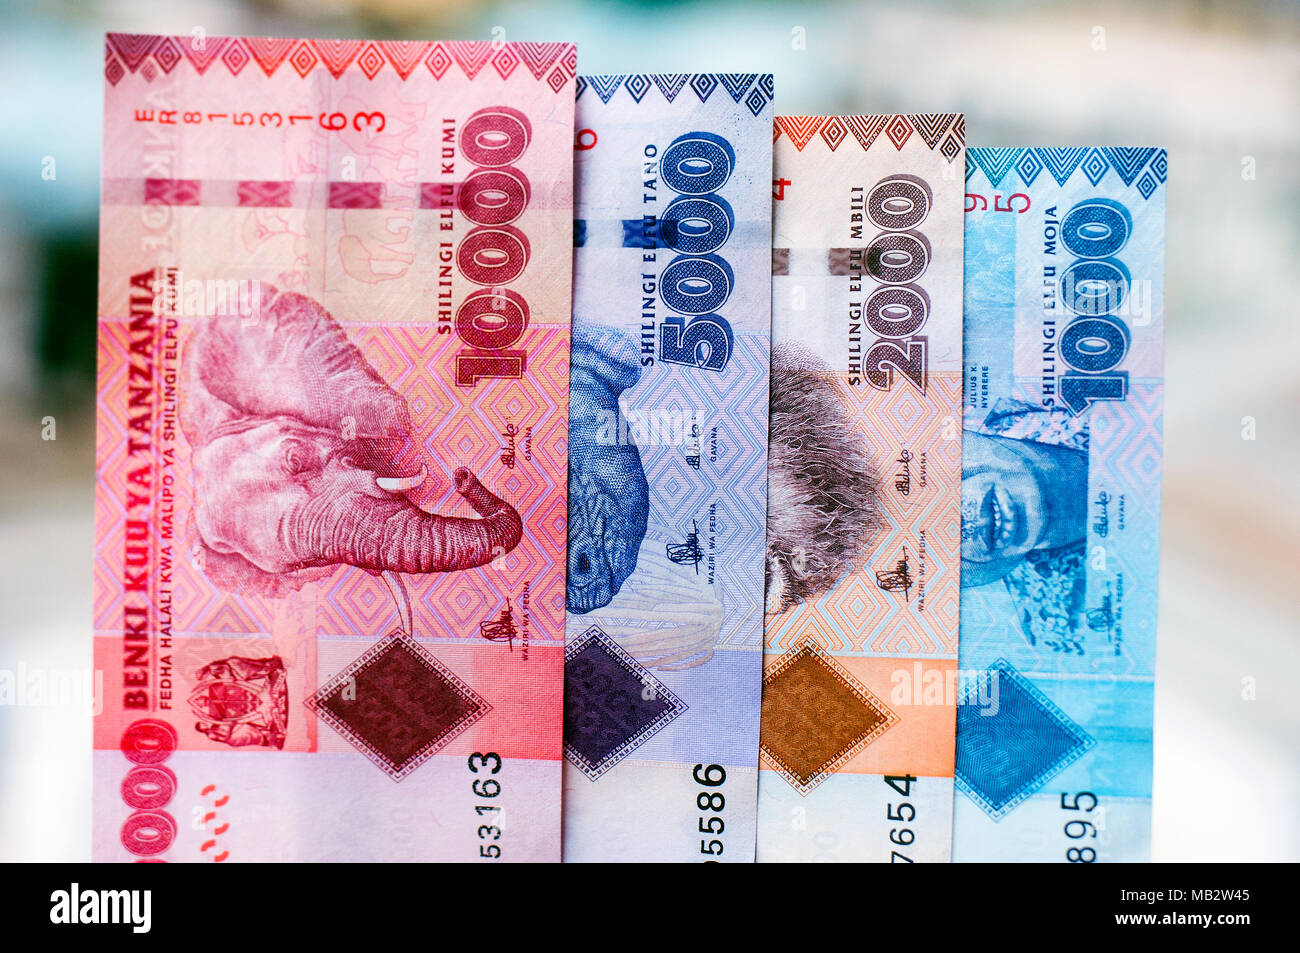 Los cuatro disponibles billetes de Tanzania en el denonmination de chelines tanzanos: 3.048, 5.000, 2.000 y 1.000, fotografiado en la localización de da Foto de stock